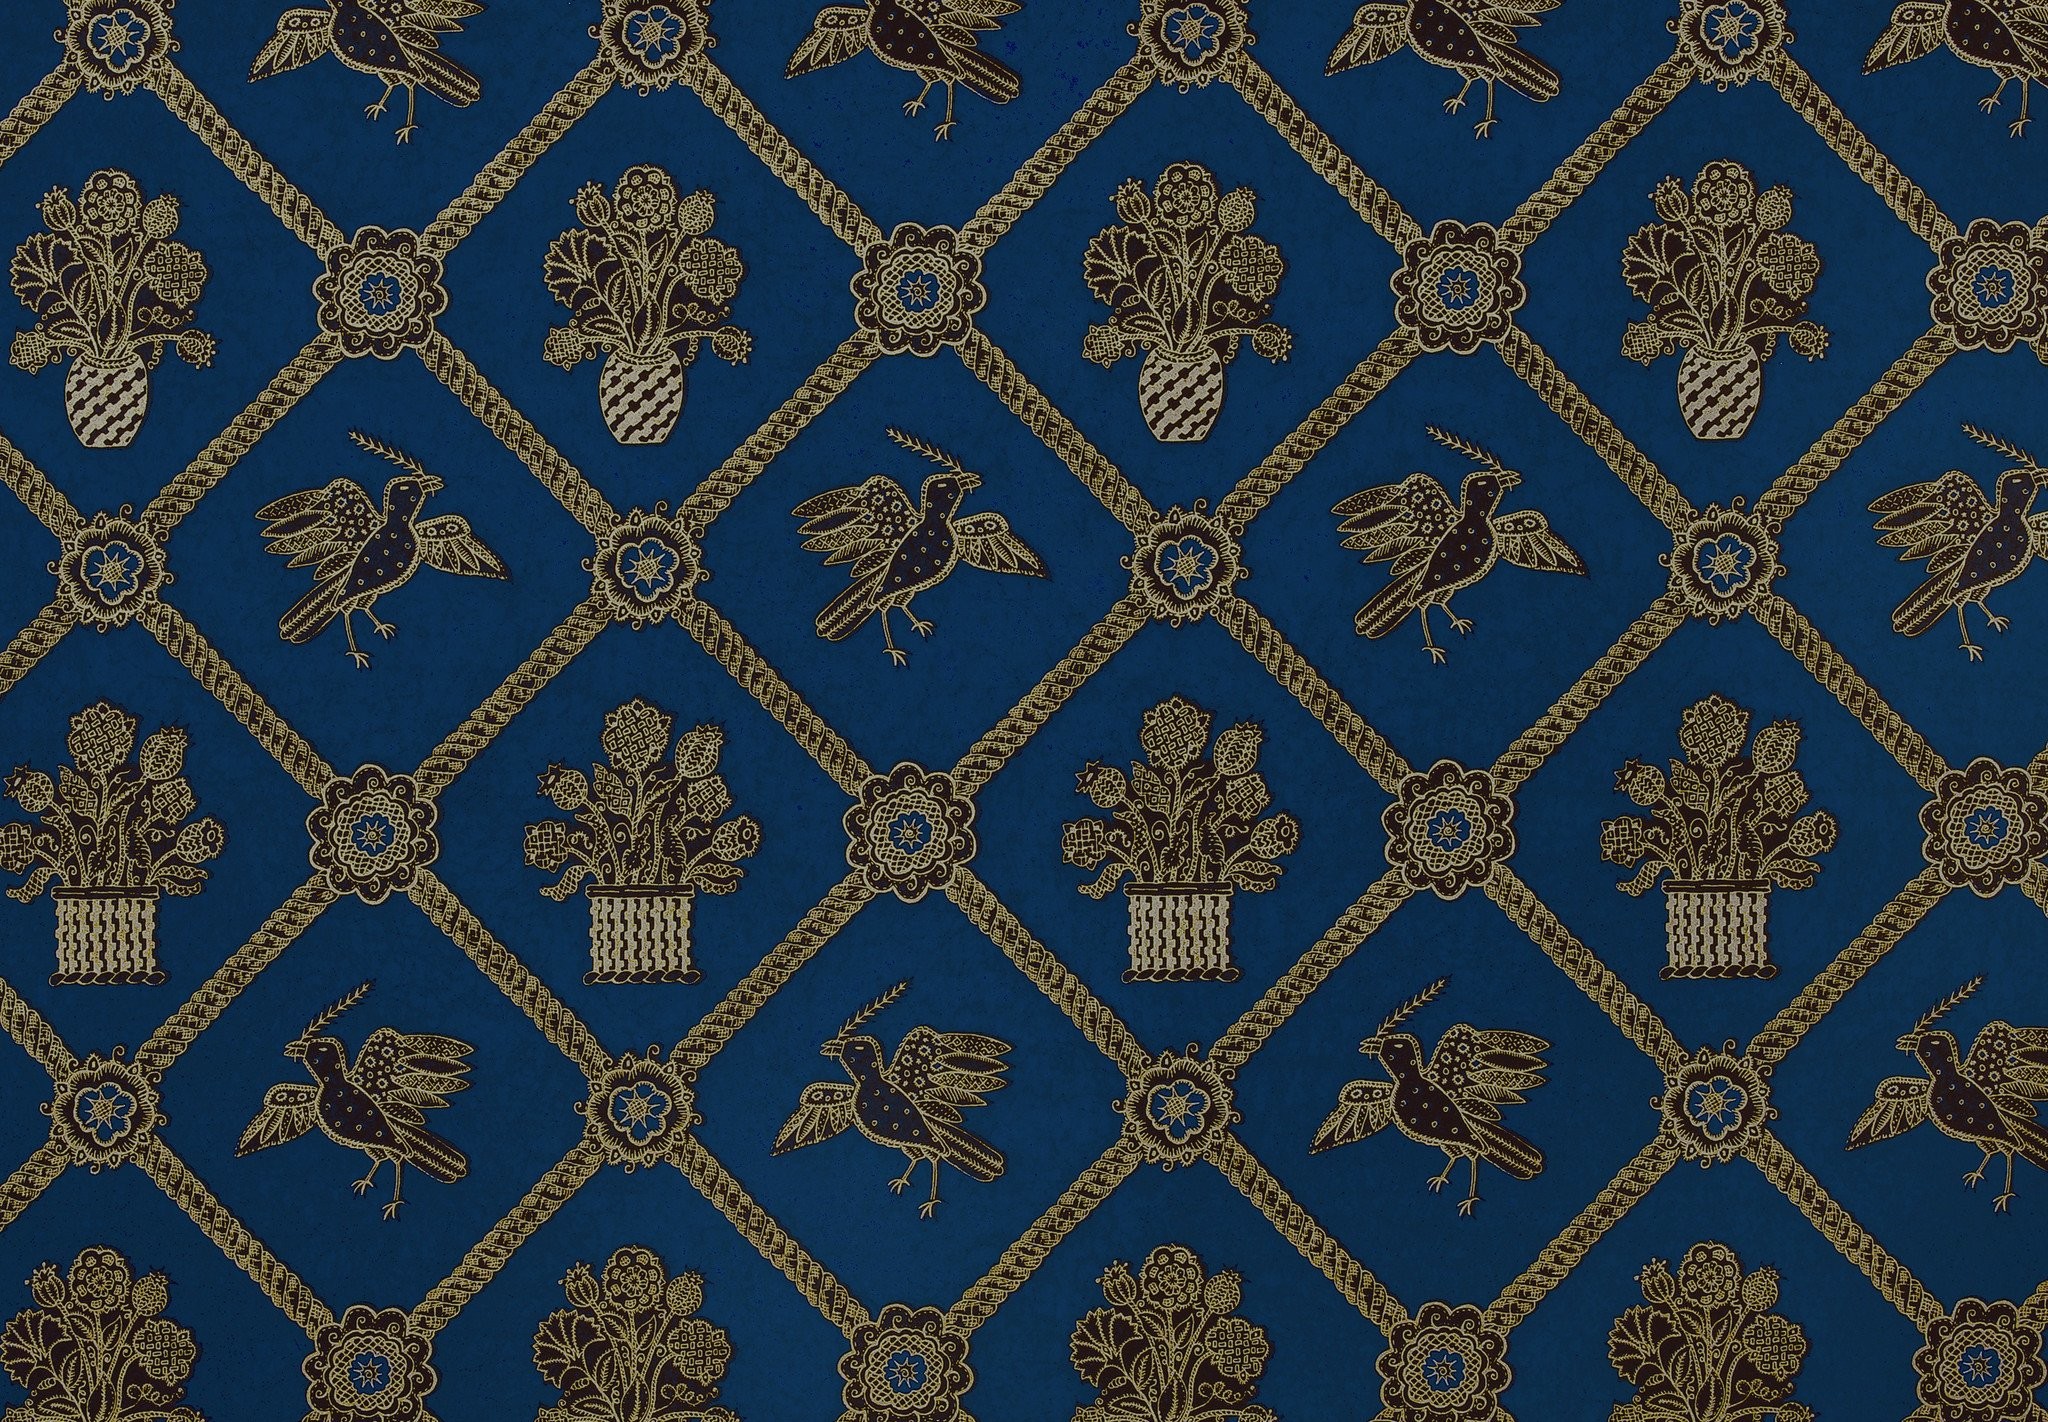 Rope Trellis Wallpaper – Royal Blue / Black / Gold Metallic